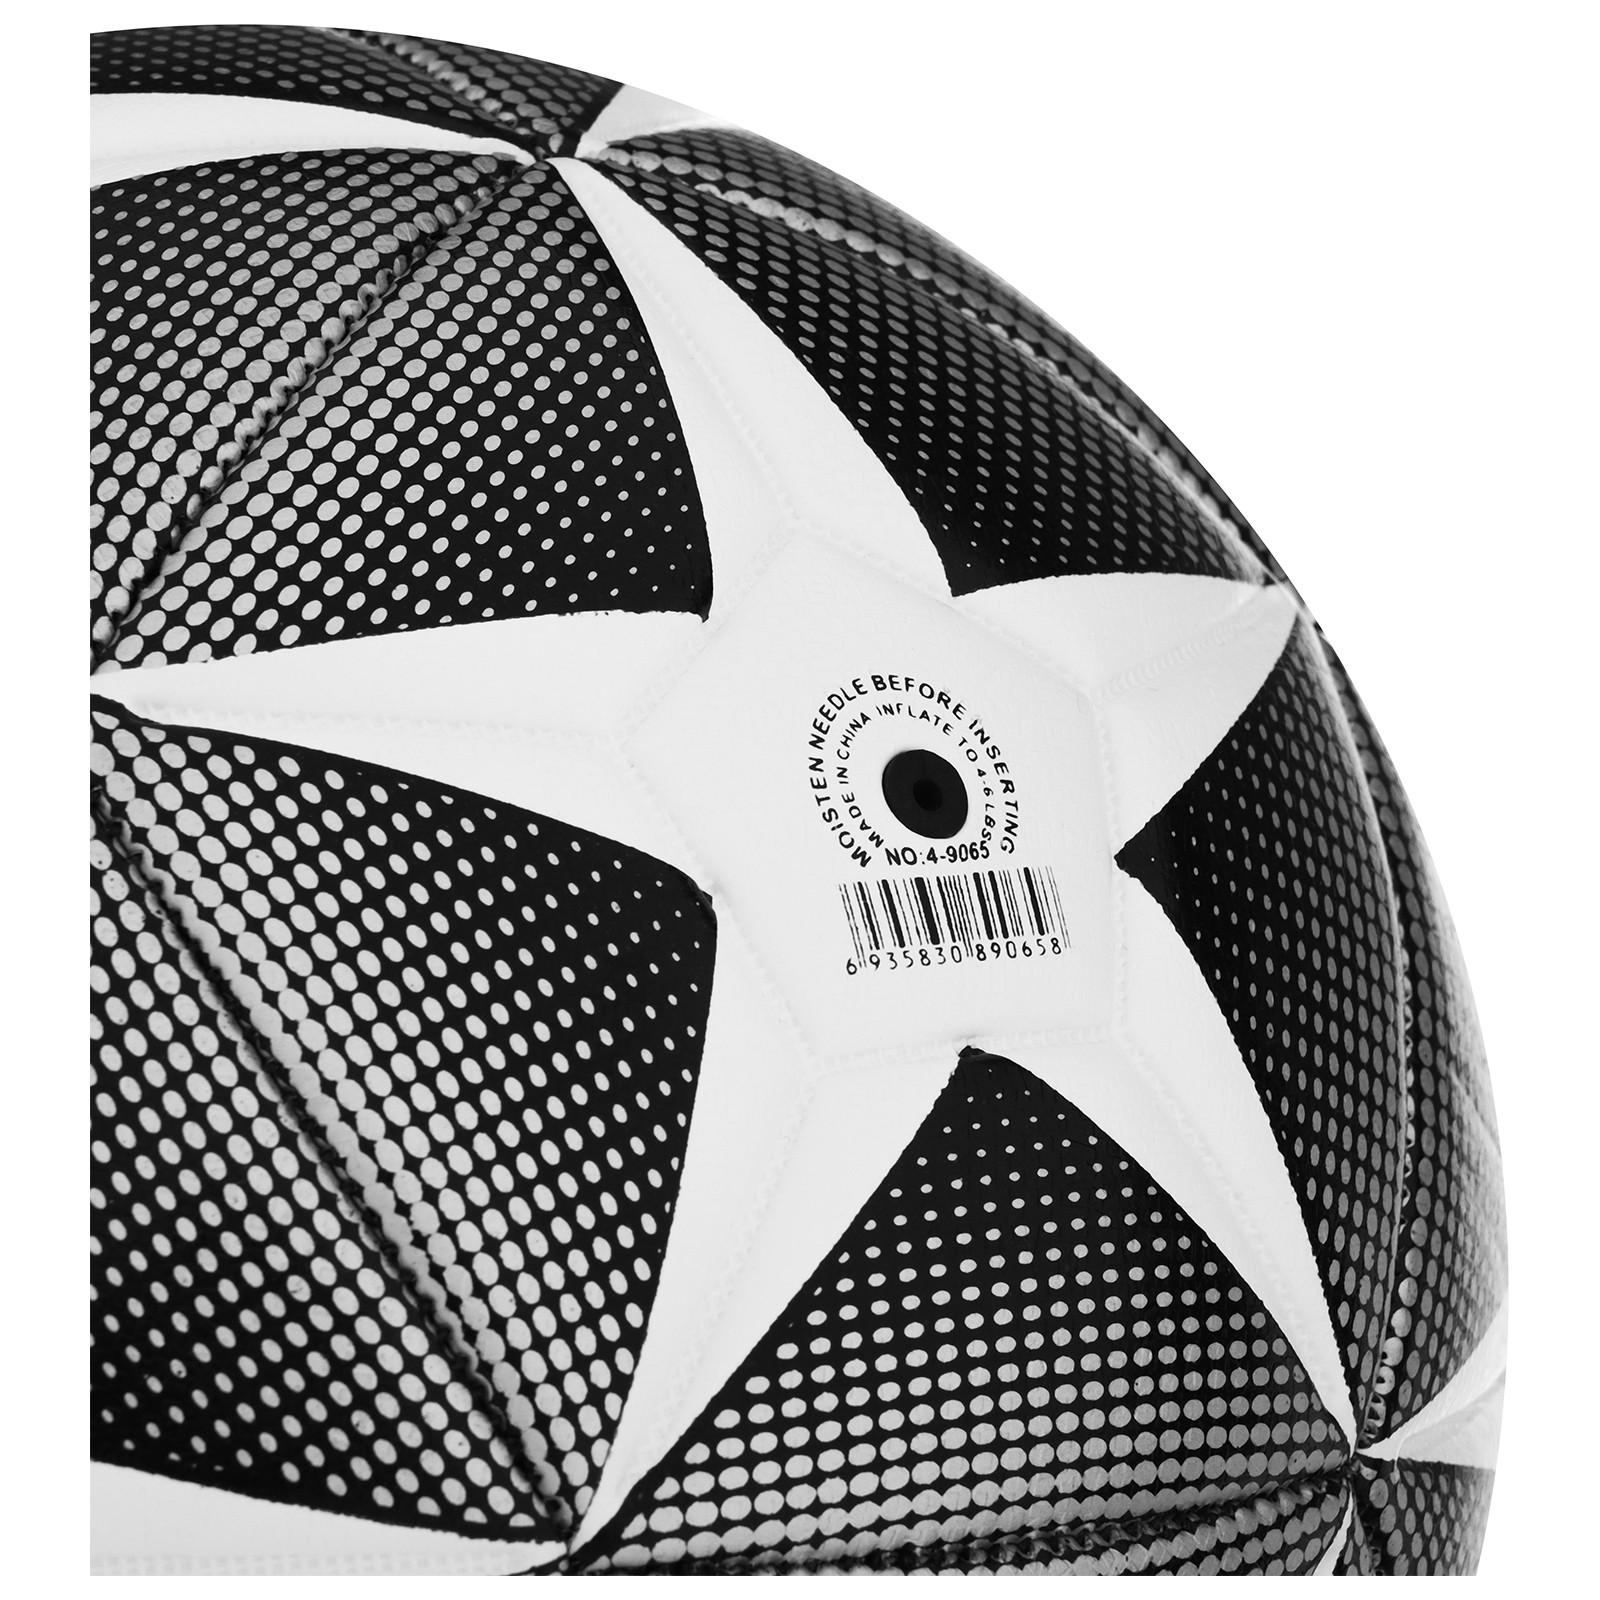 Мяч MINSA футбольный PU. машинная сшивка. 32 панели. размер 4. 380 г - фото 4